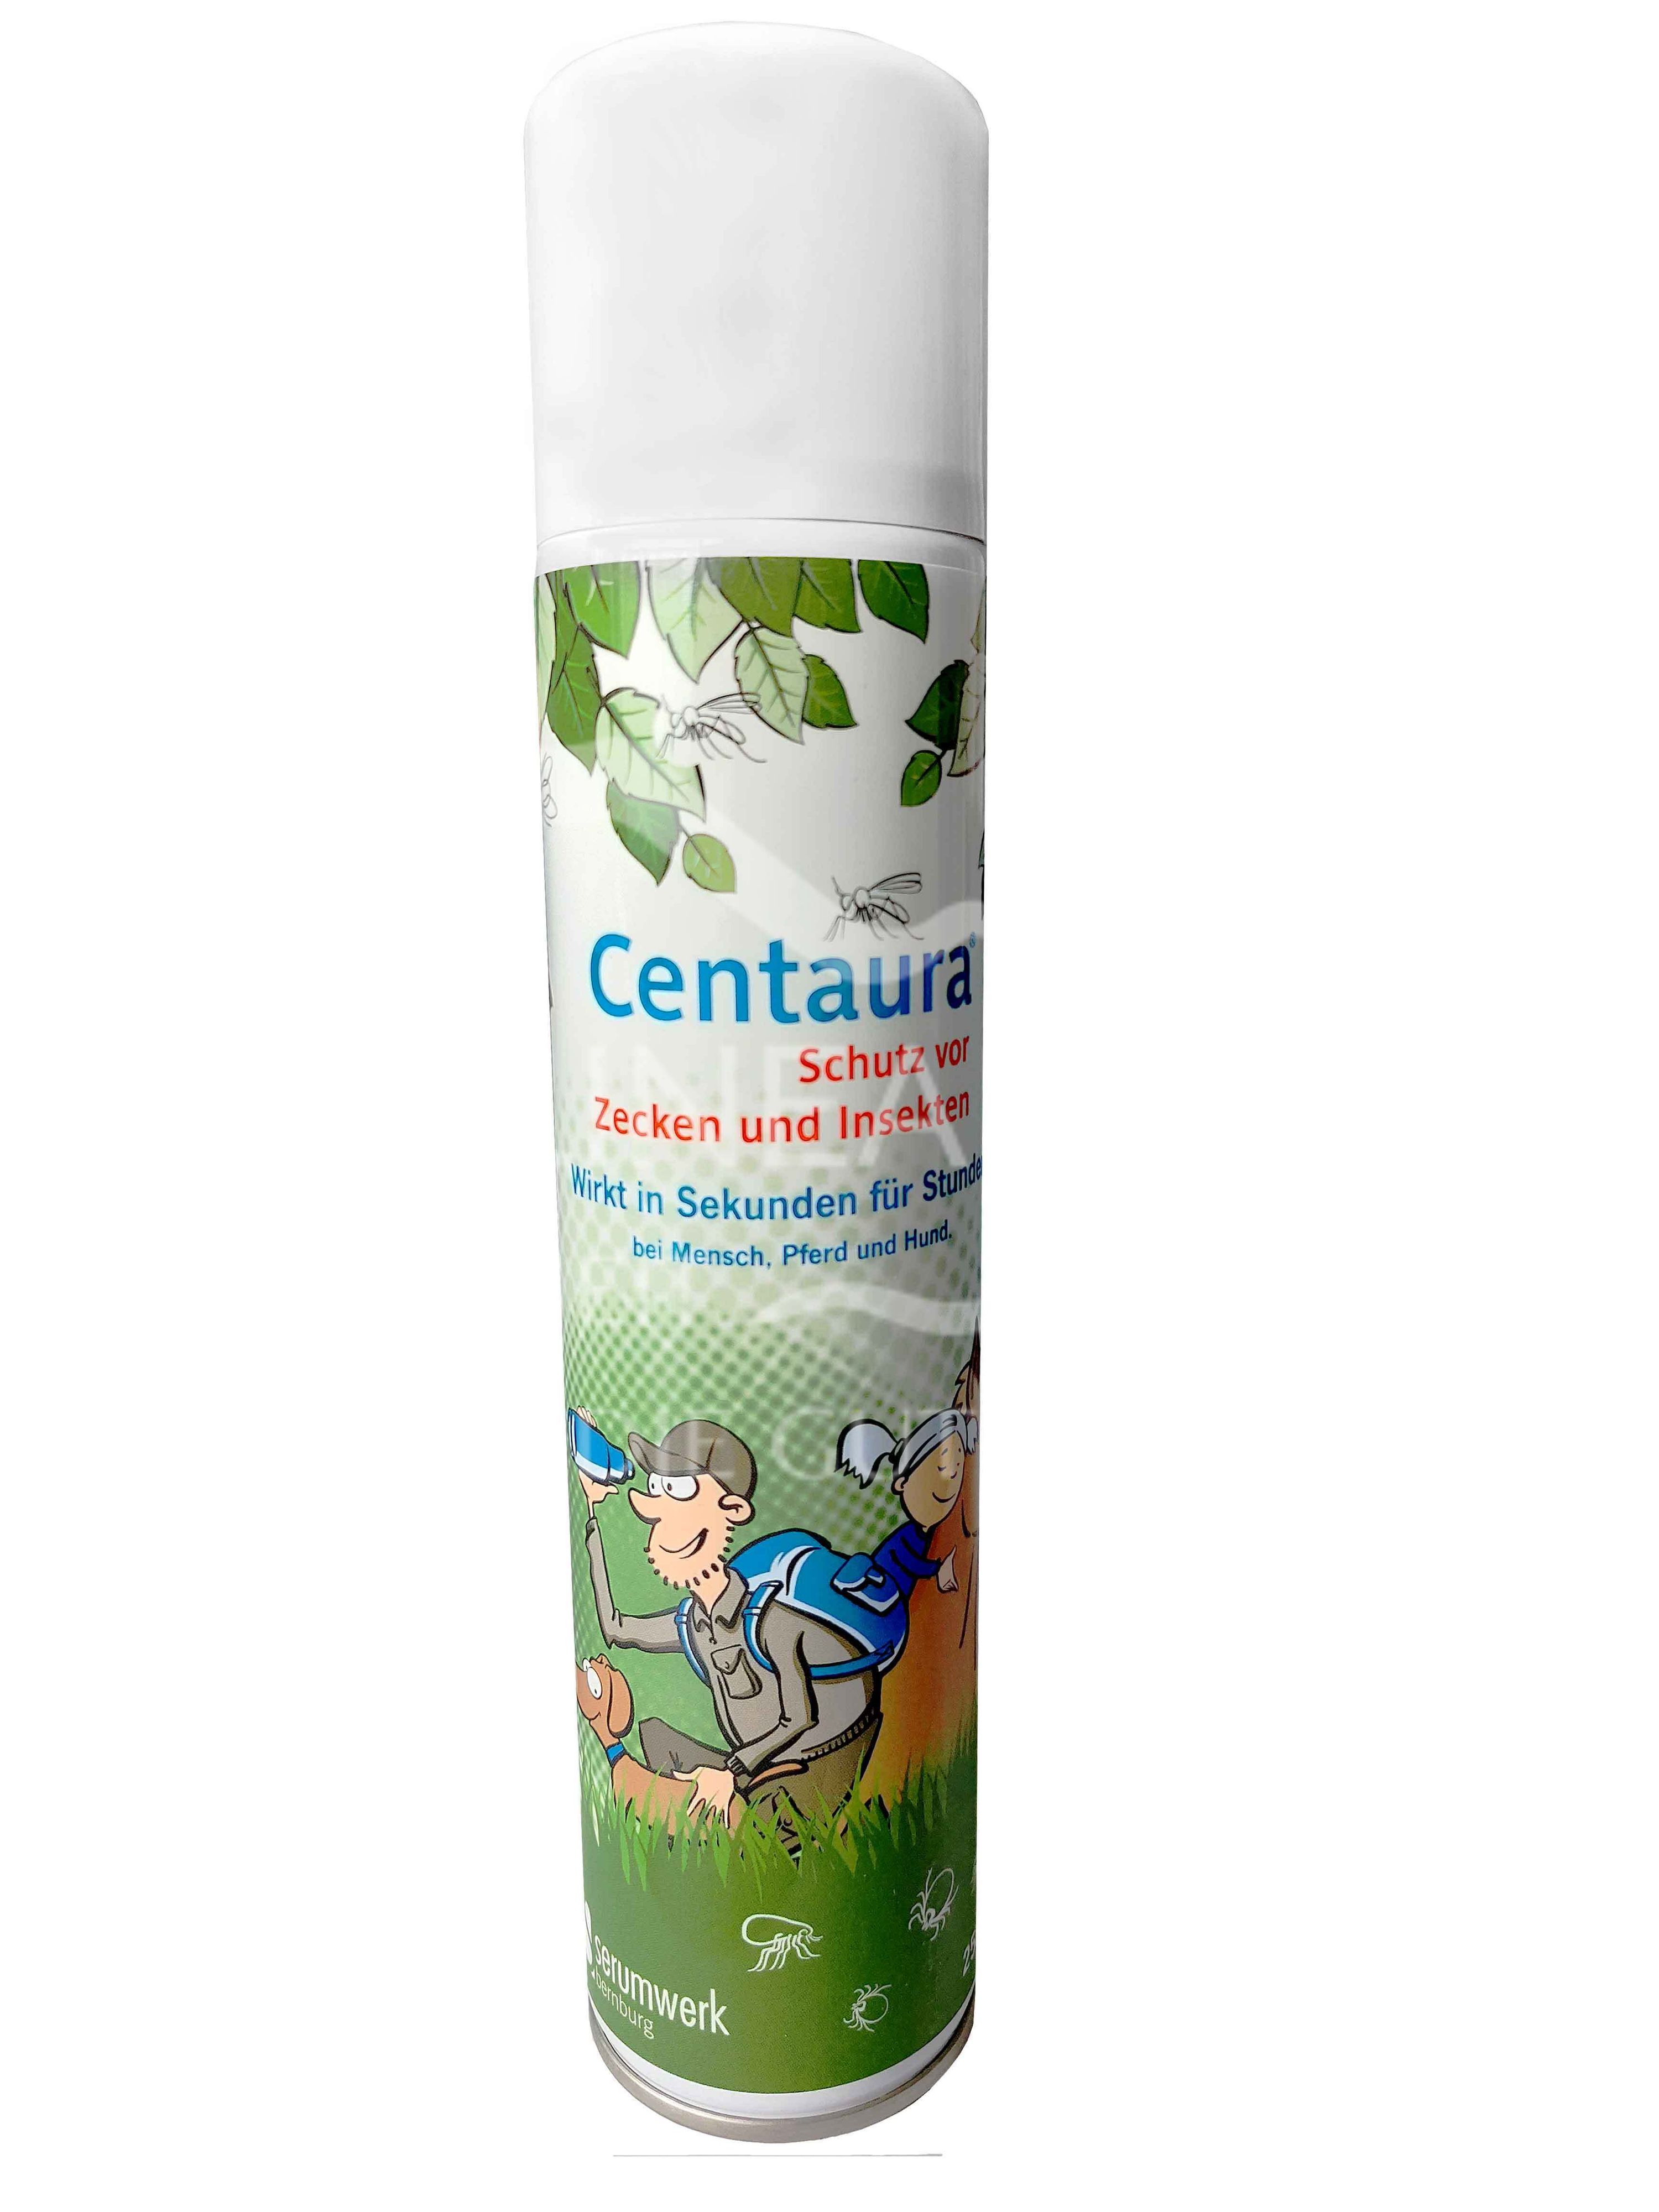 Centaura Repellent Spray für Pferde, Hunde & Menschen